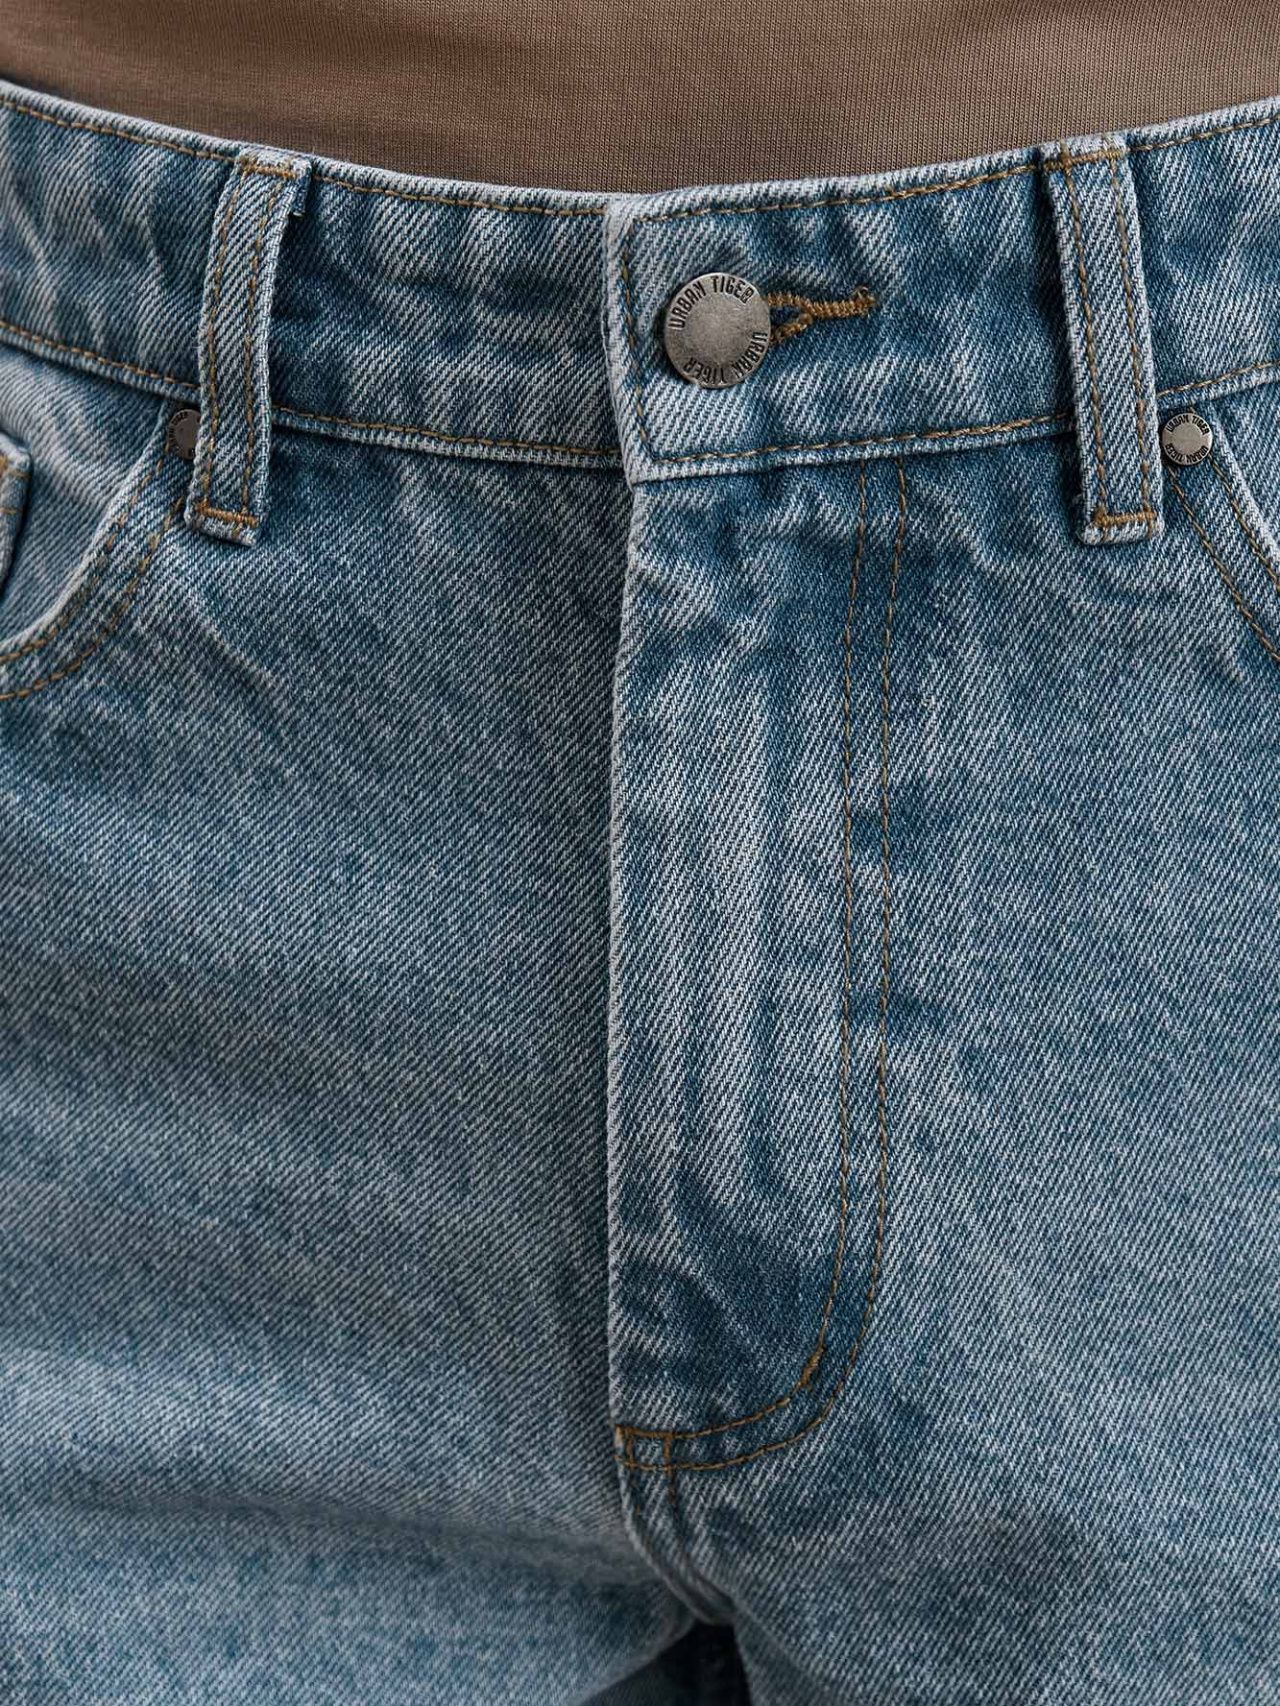 изображение джинсы relax fit